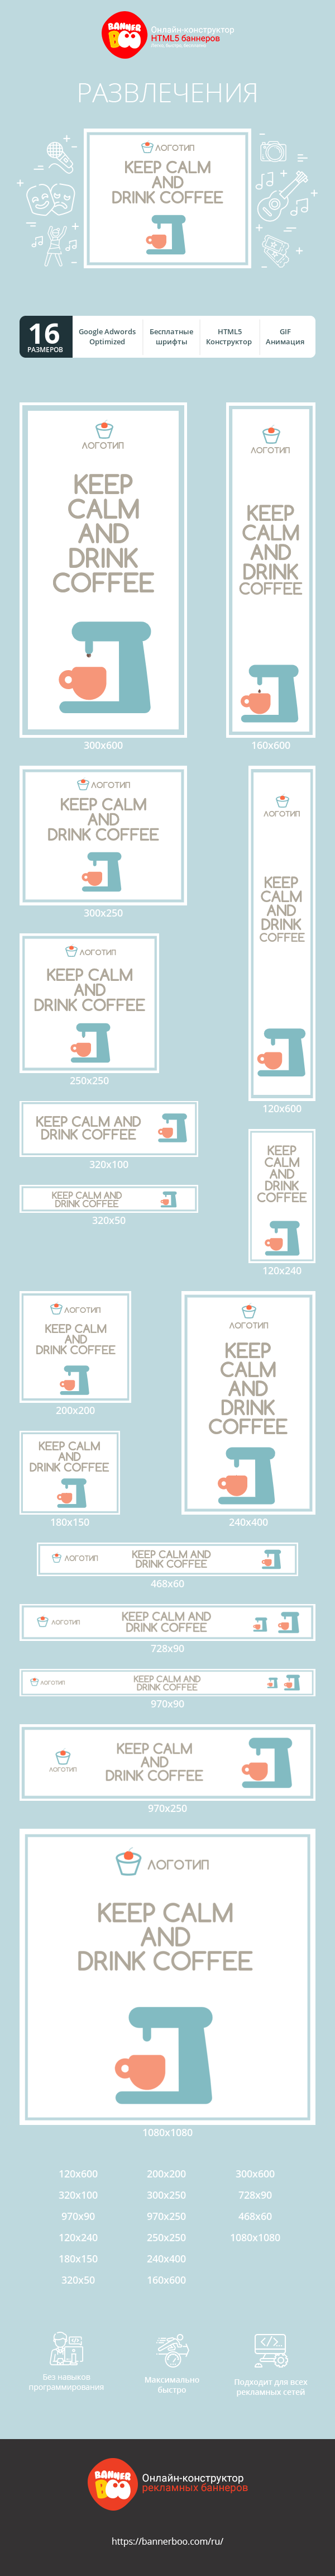 Шаблон рекламного баннера — Keep Calm and Drink Coffee